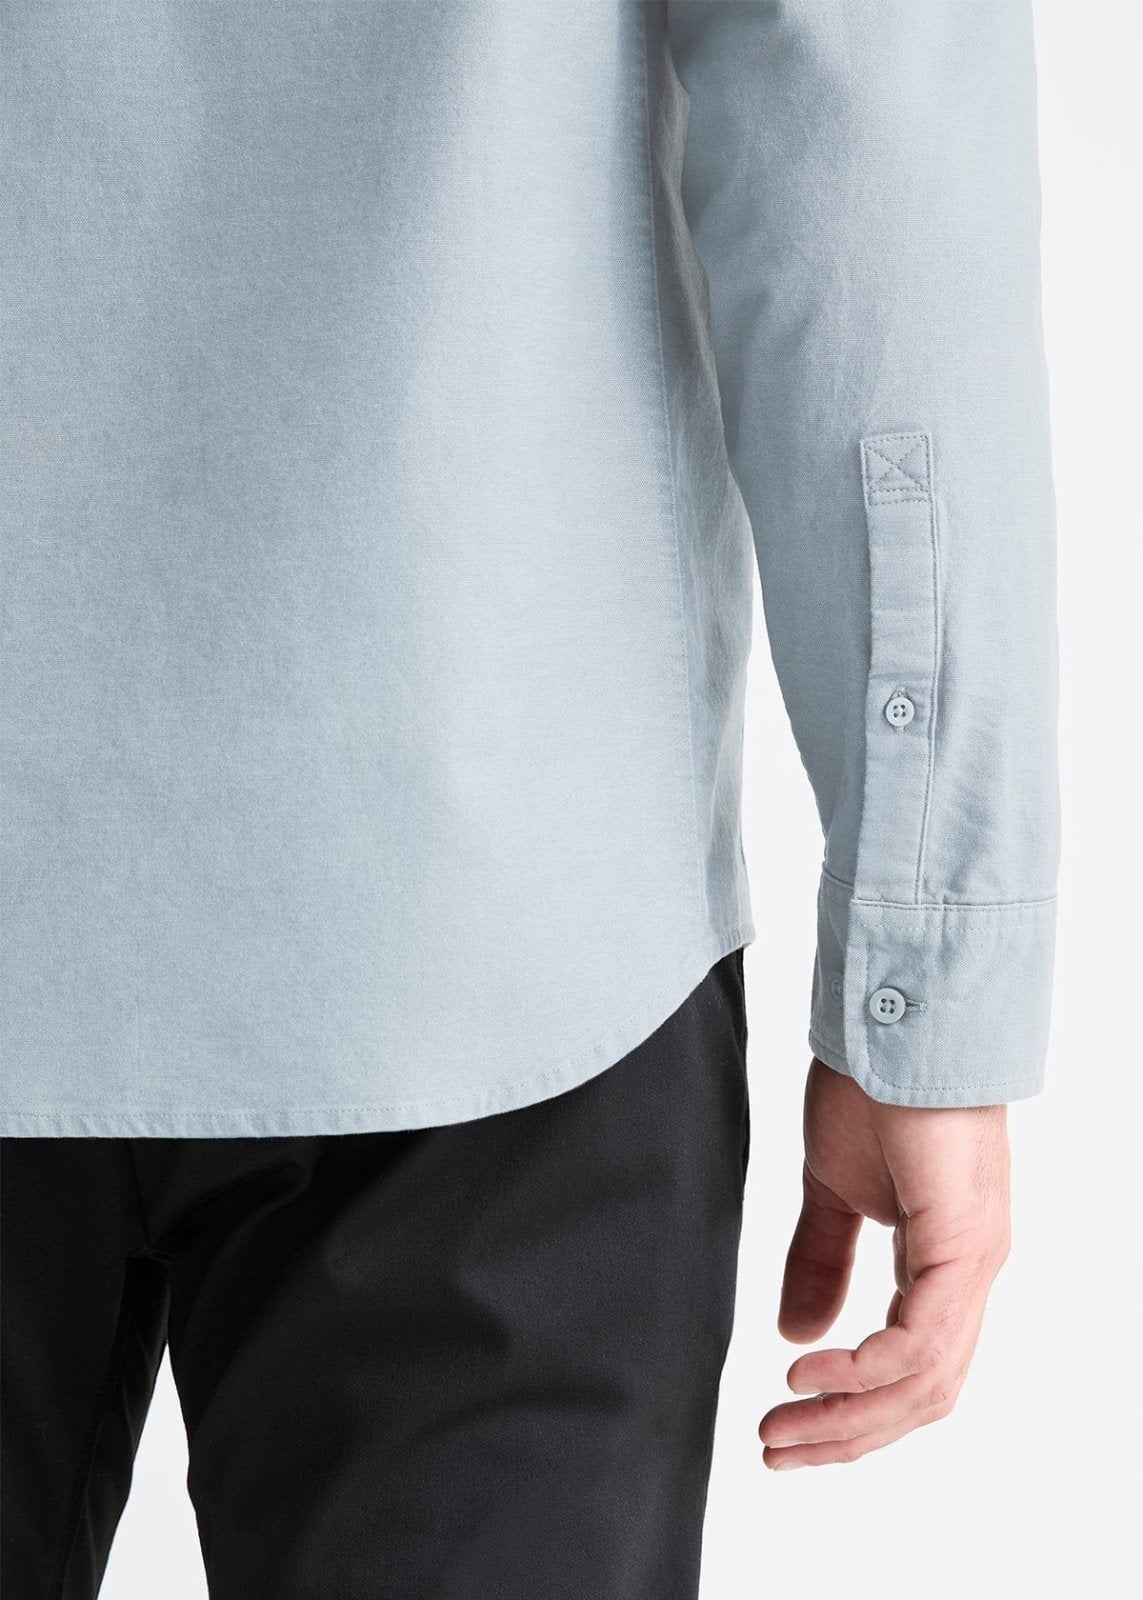 mens light blue stretch button down shirt sleeve button details